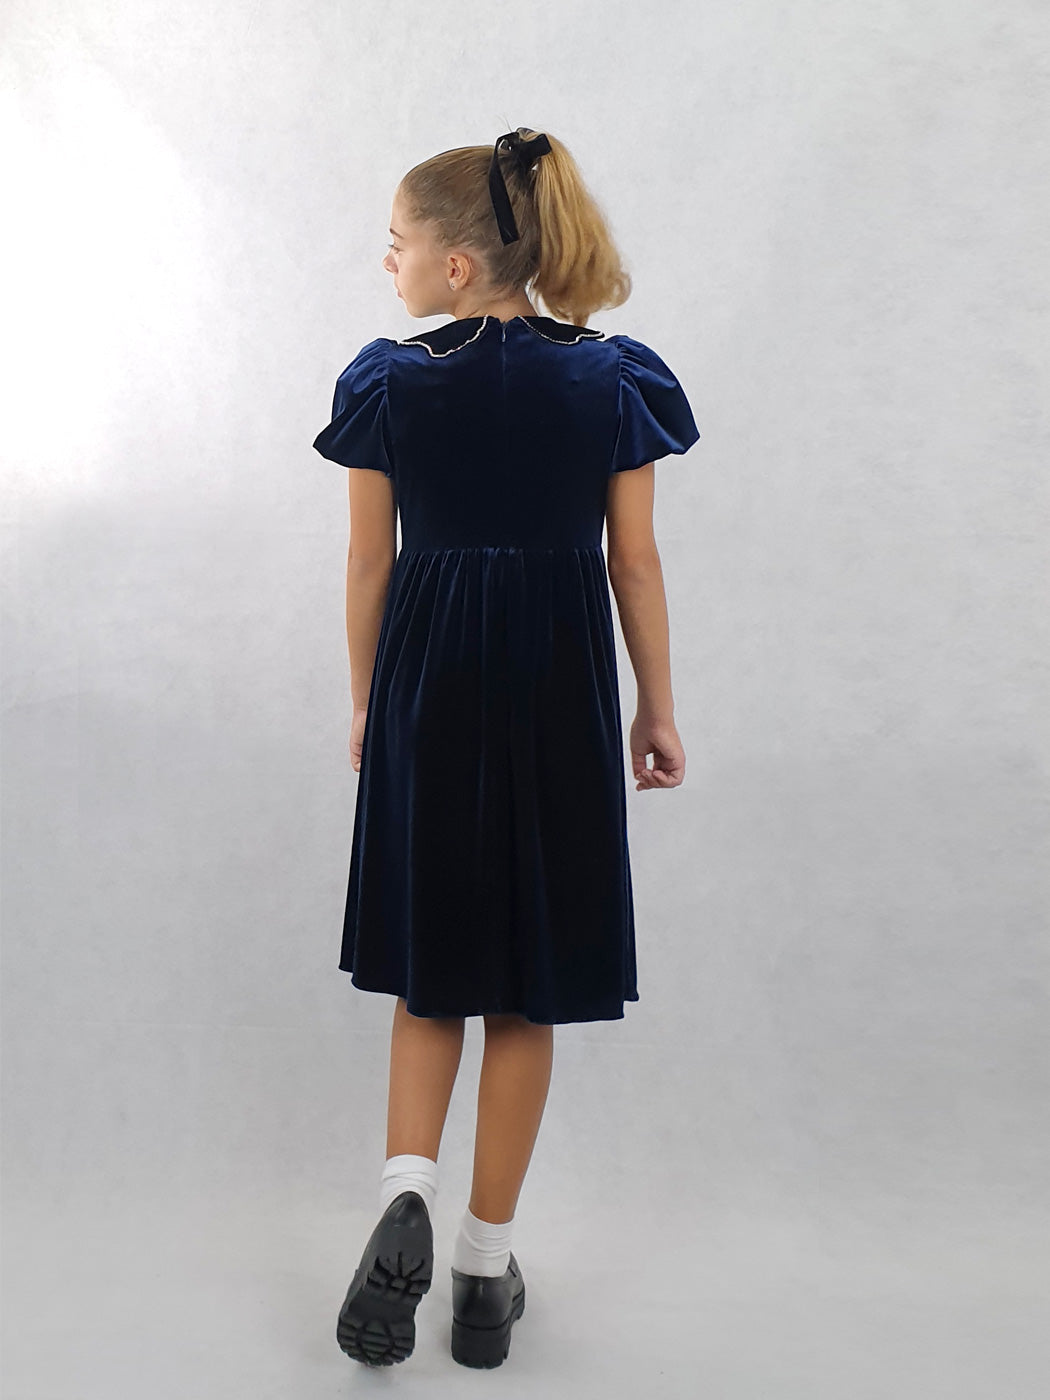 Κοριτσίστικο βελούδινο φόρεμα με στρας - MANILLA Blue